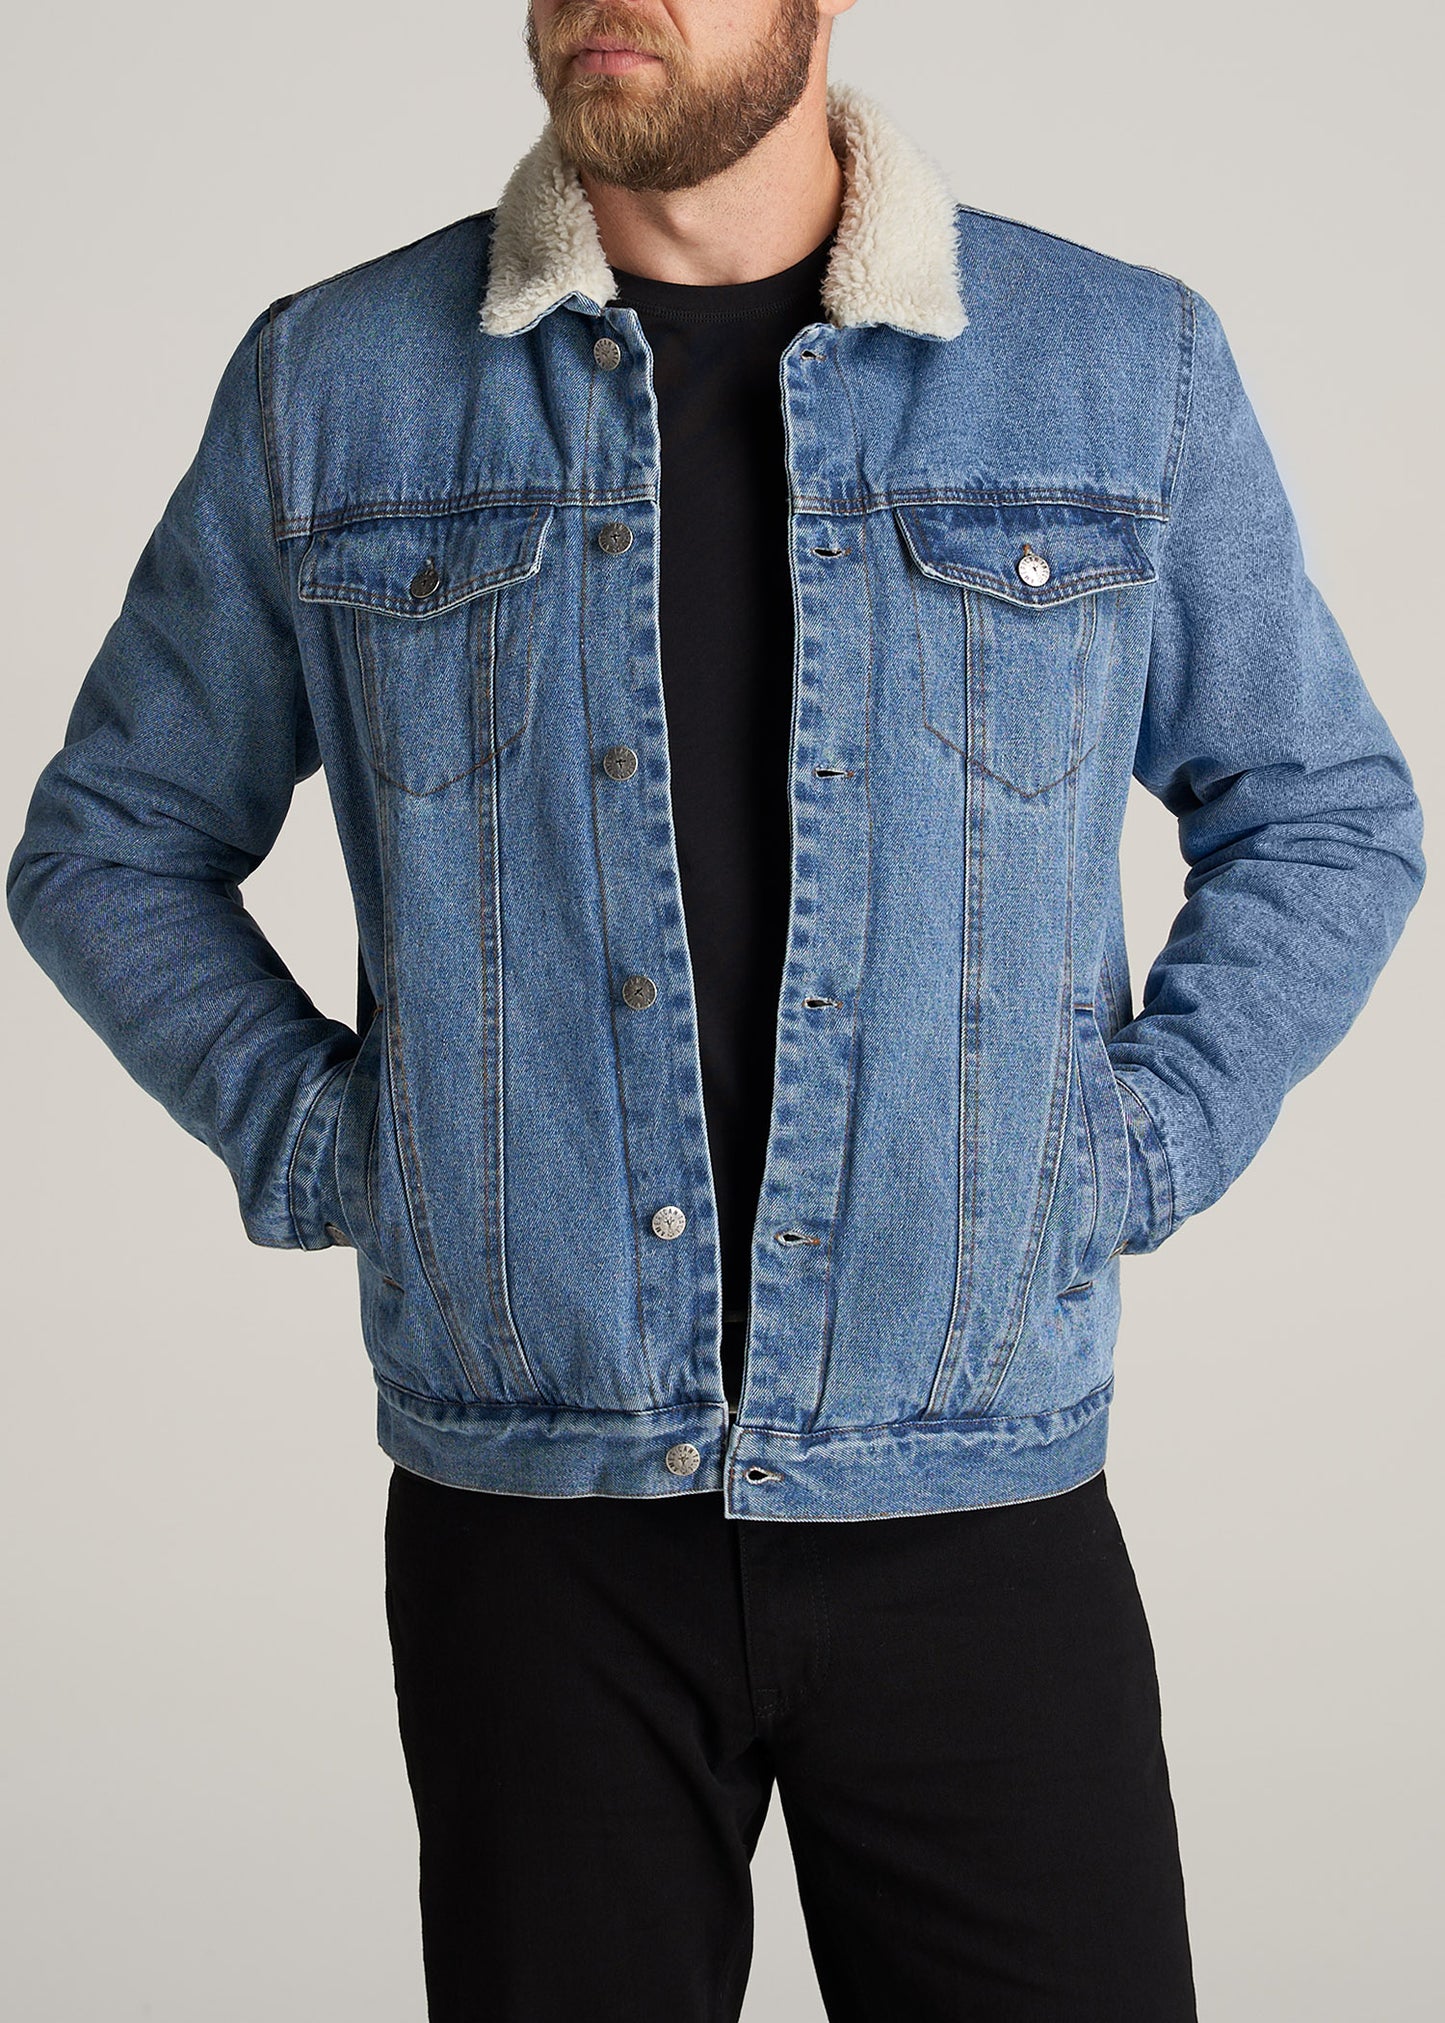 Men's Long Denim Jean Jacket Fleece Lined Button Winter Warm Overcoat Punk  New- | eBay